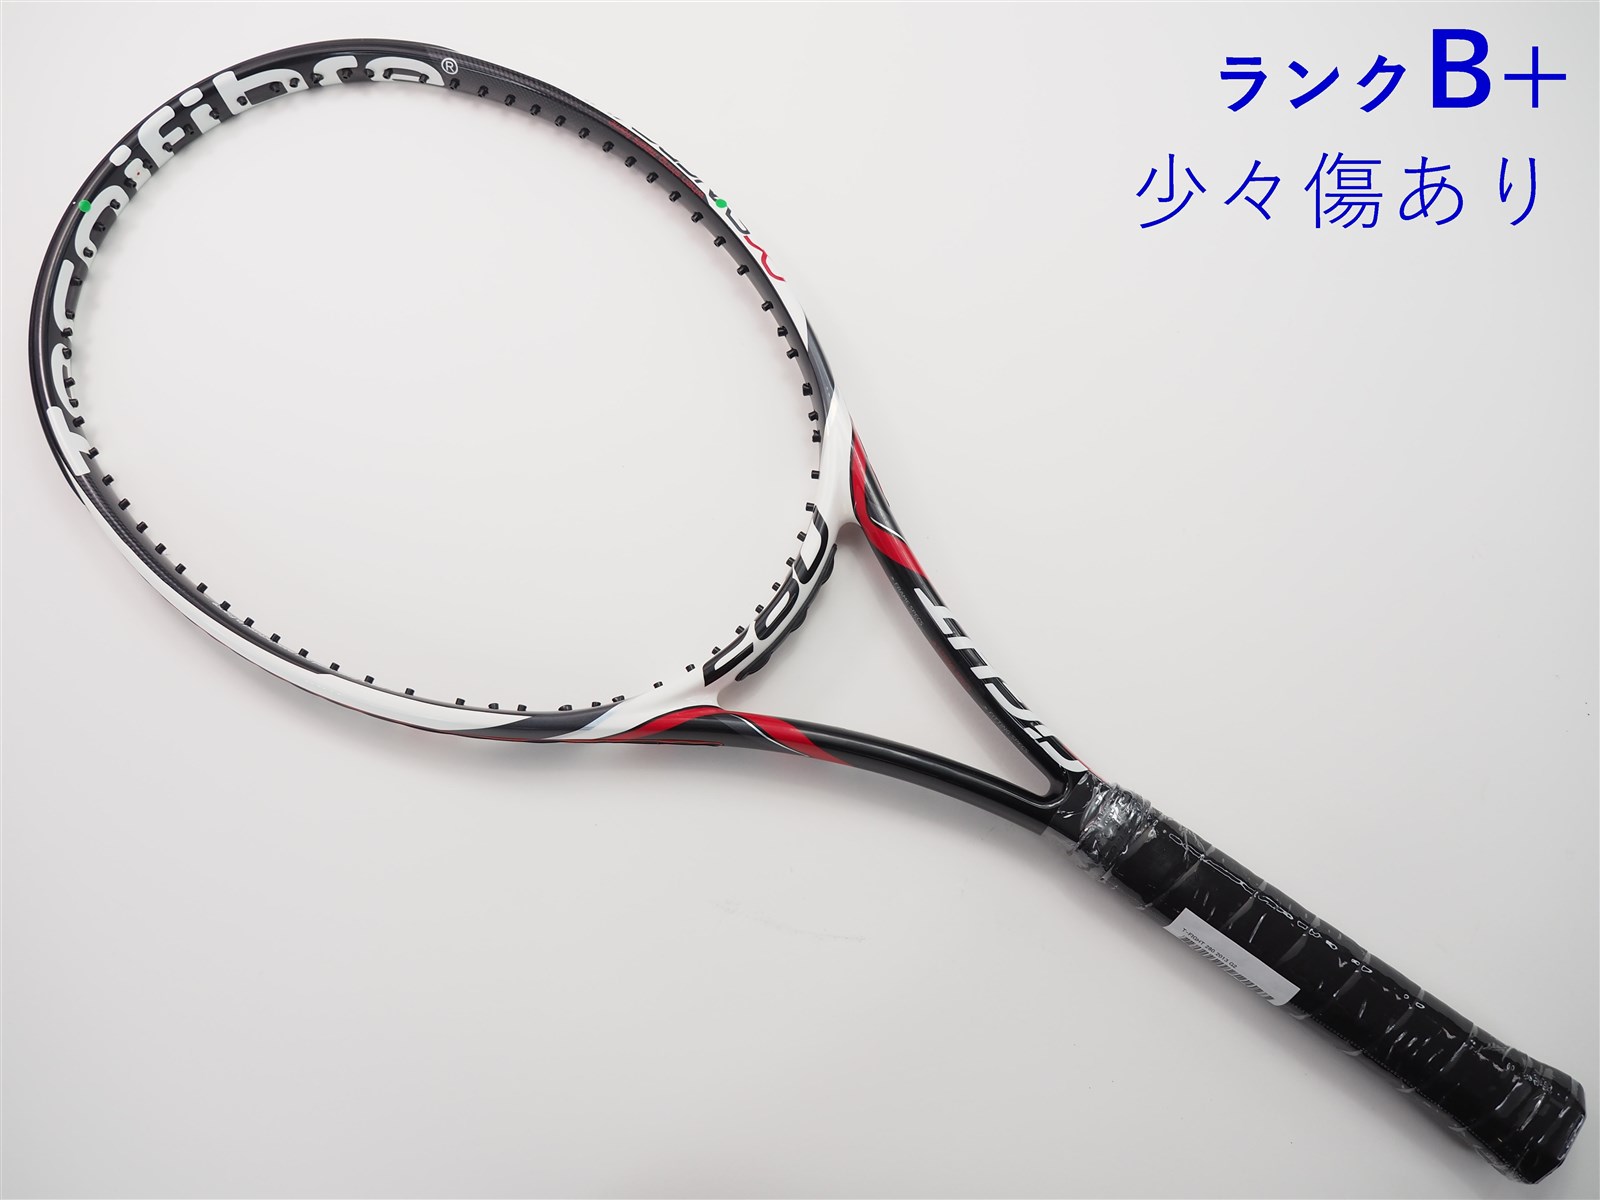 テニスラケット テクニファイバー ティーファイト 280 2013年モデル